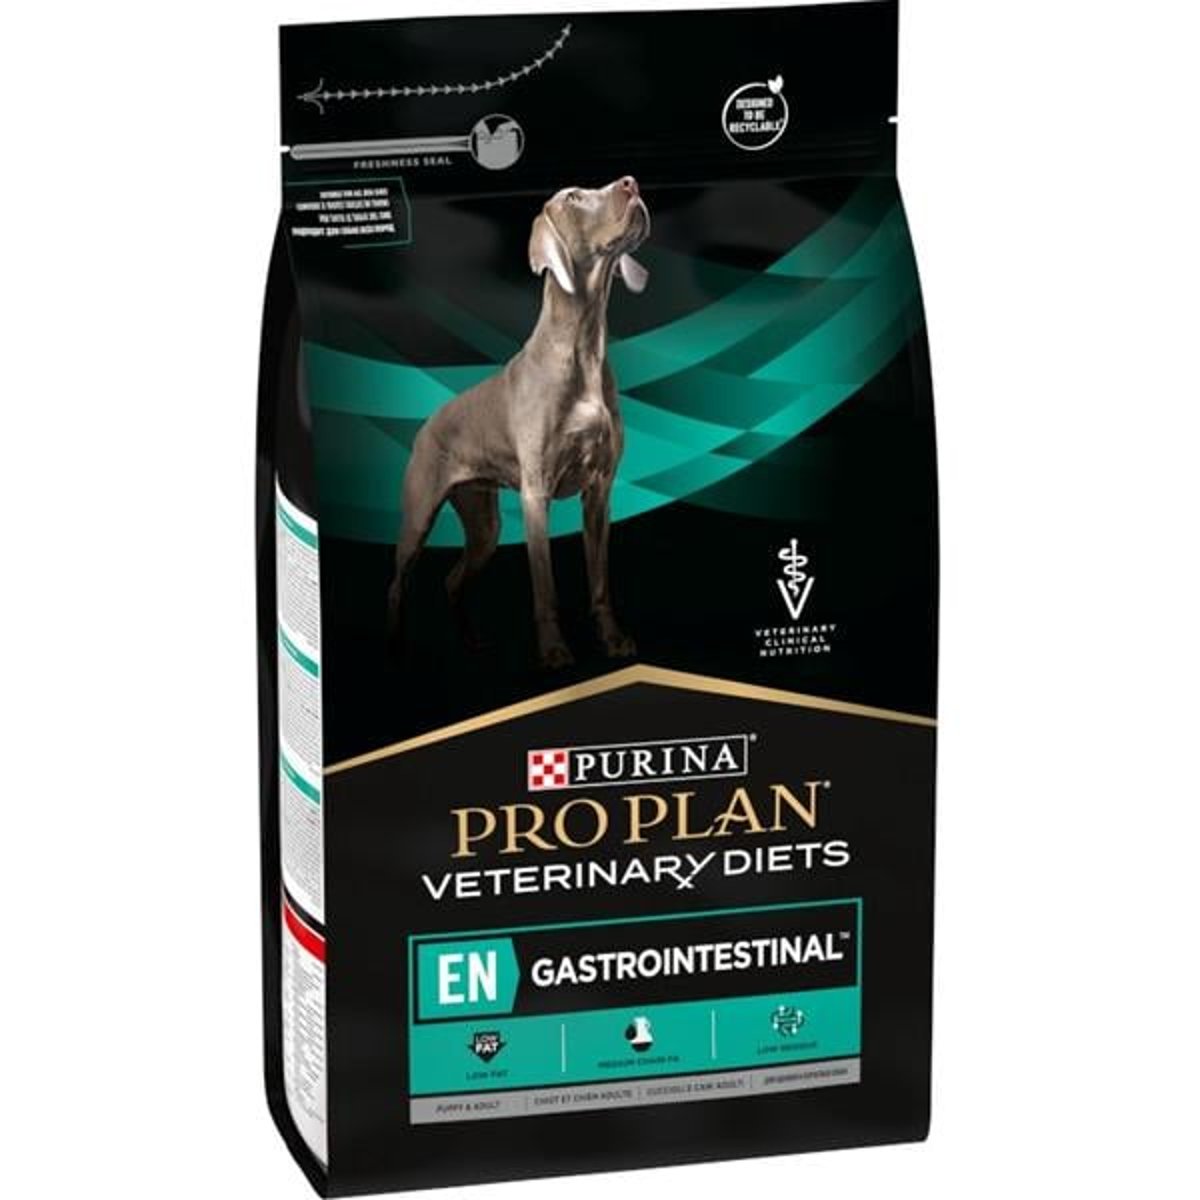 Pro Plan Veterinary Diets Gastrointestinal krmivo pro štěňata a dospělé psy